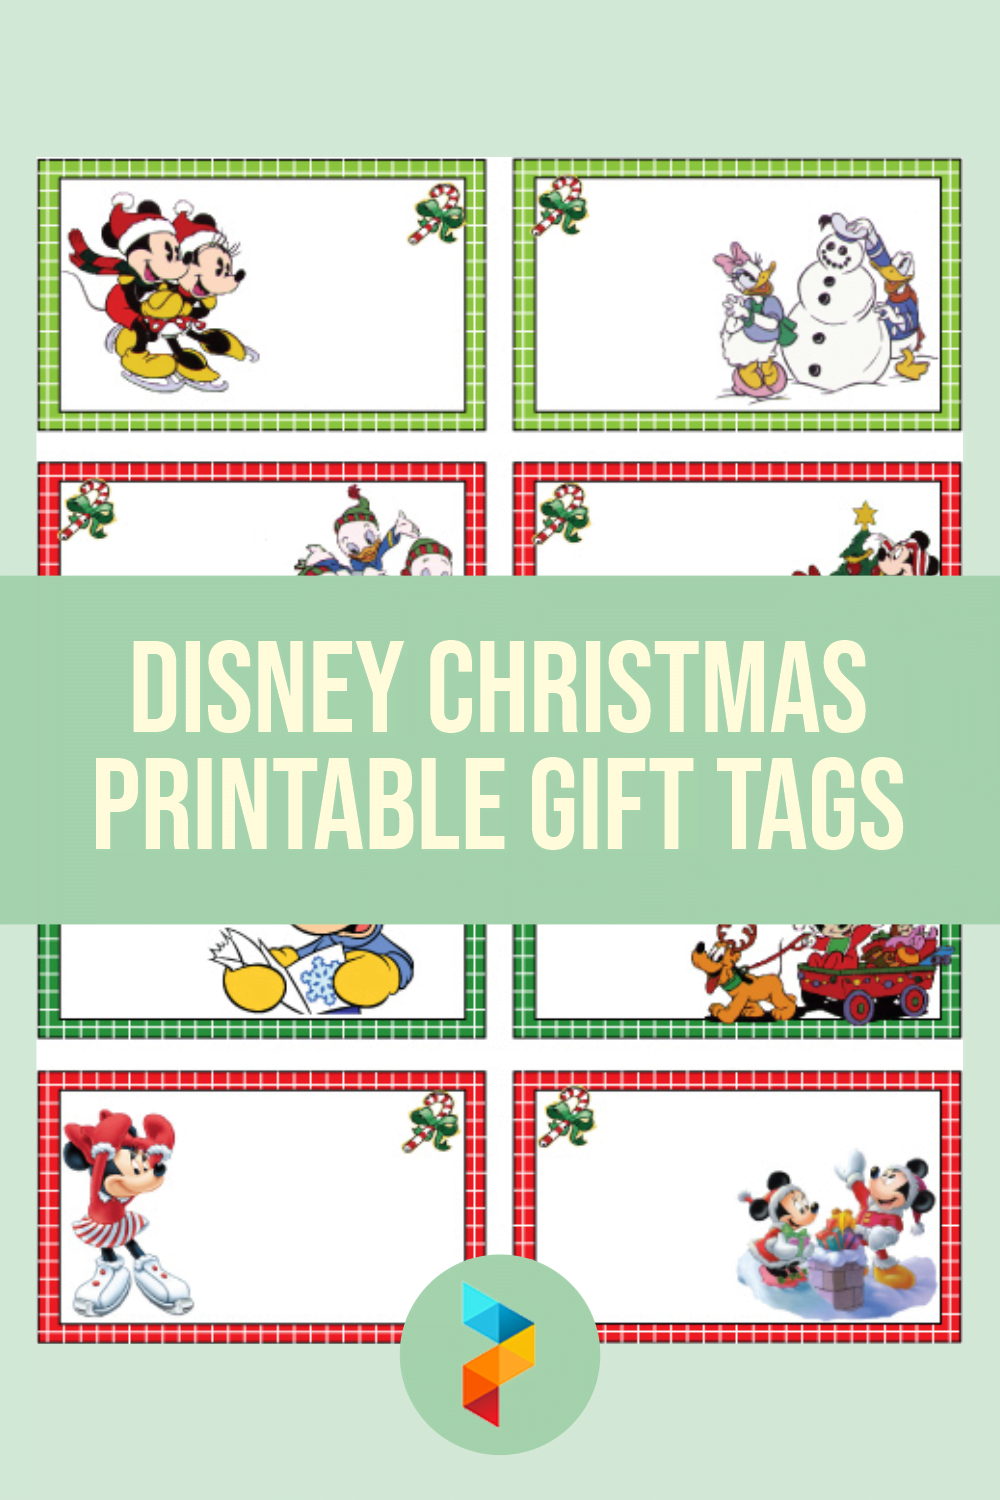 Disney Christmas Tags Printable